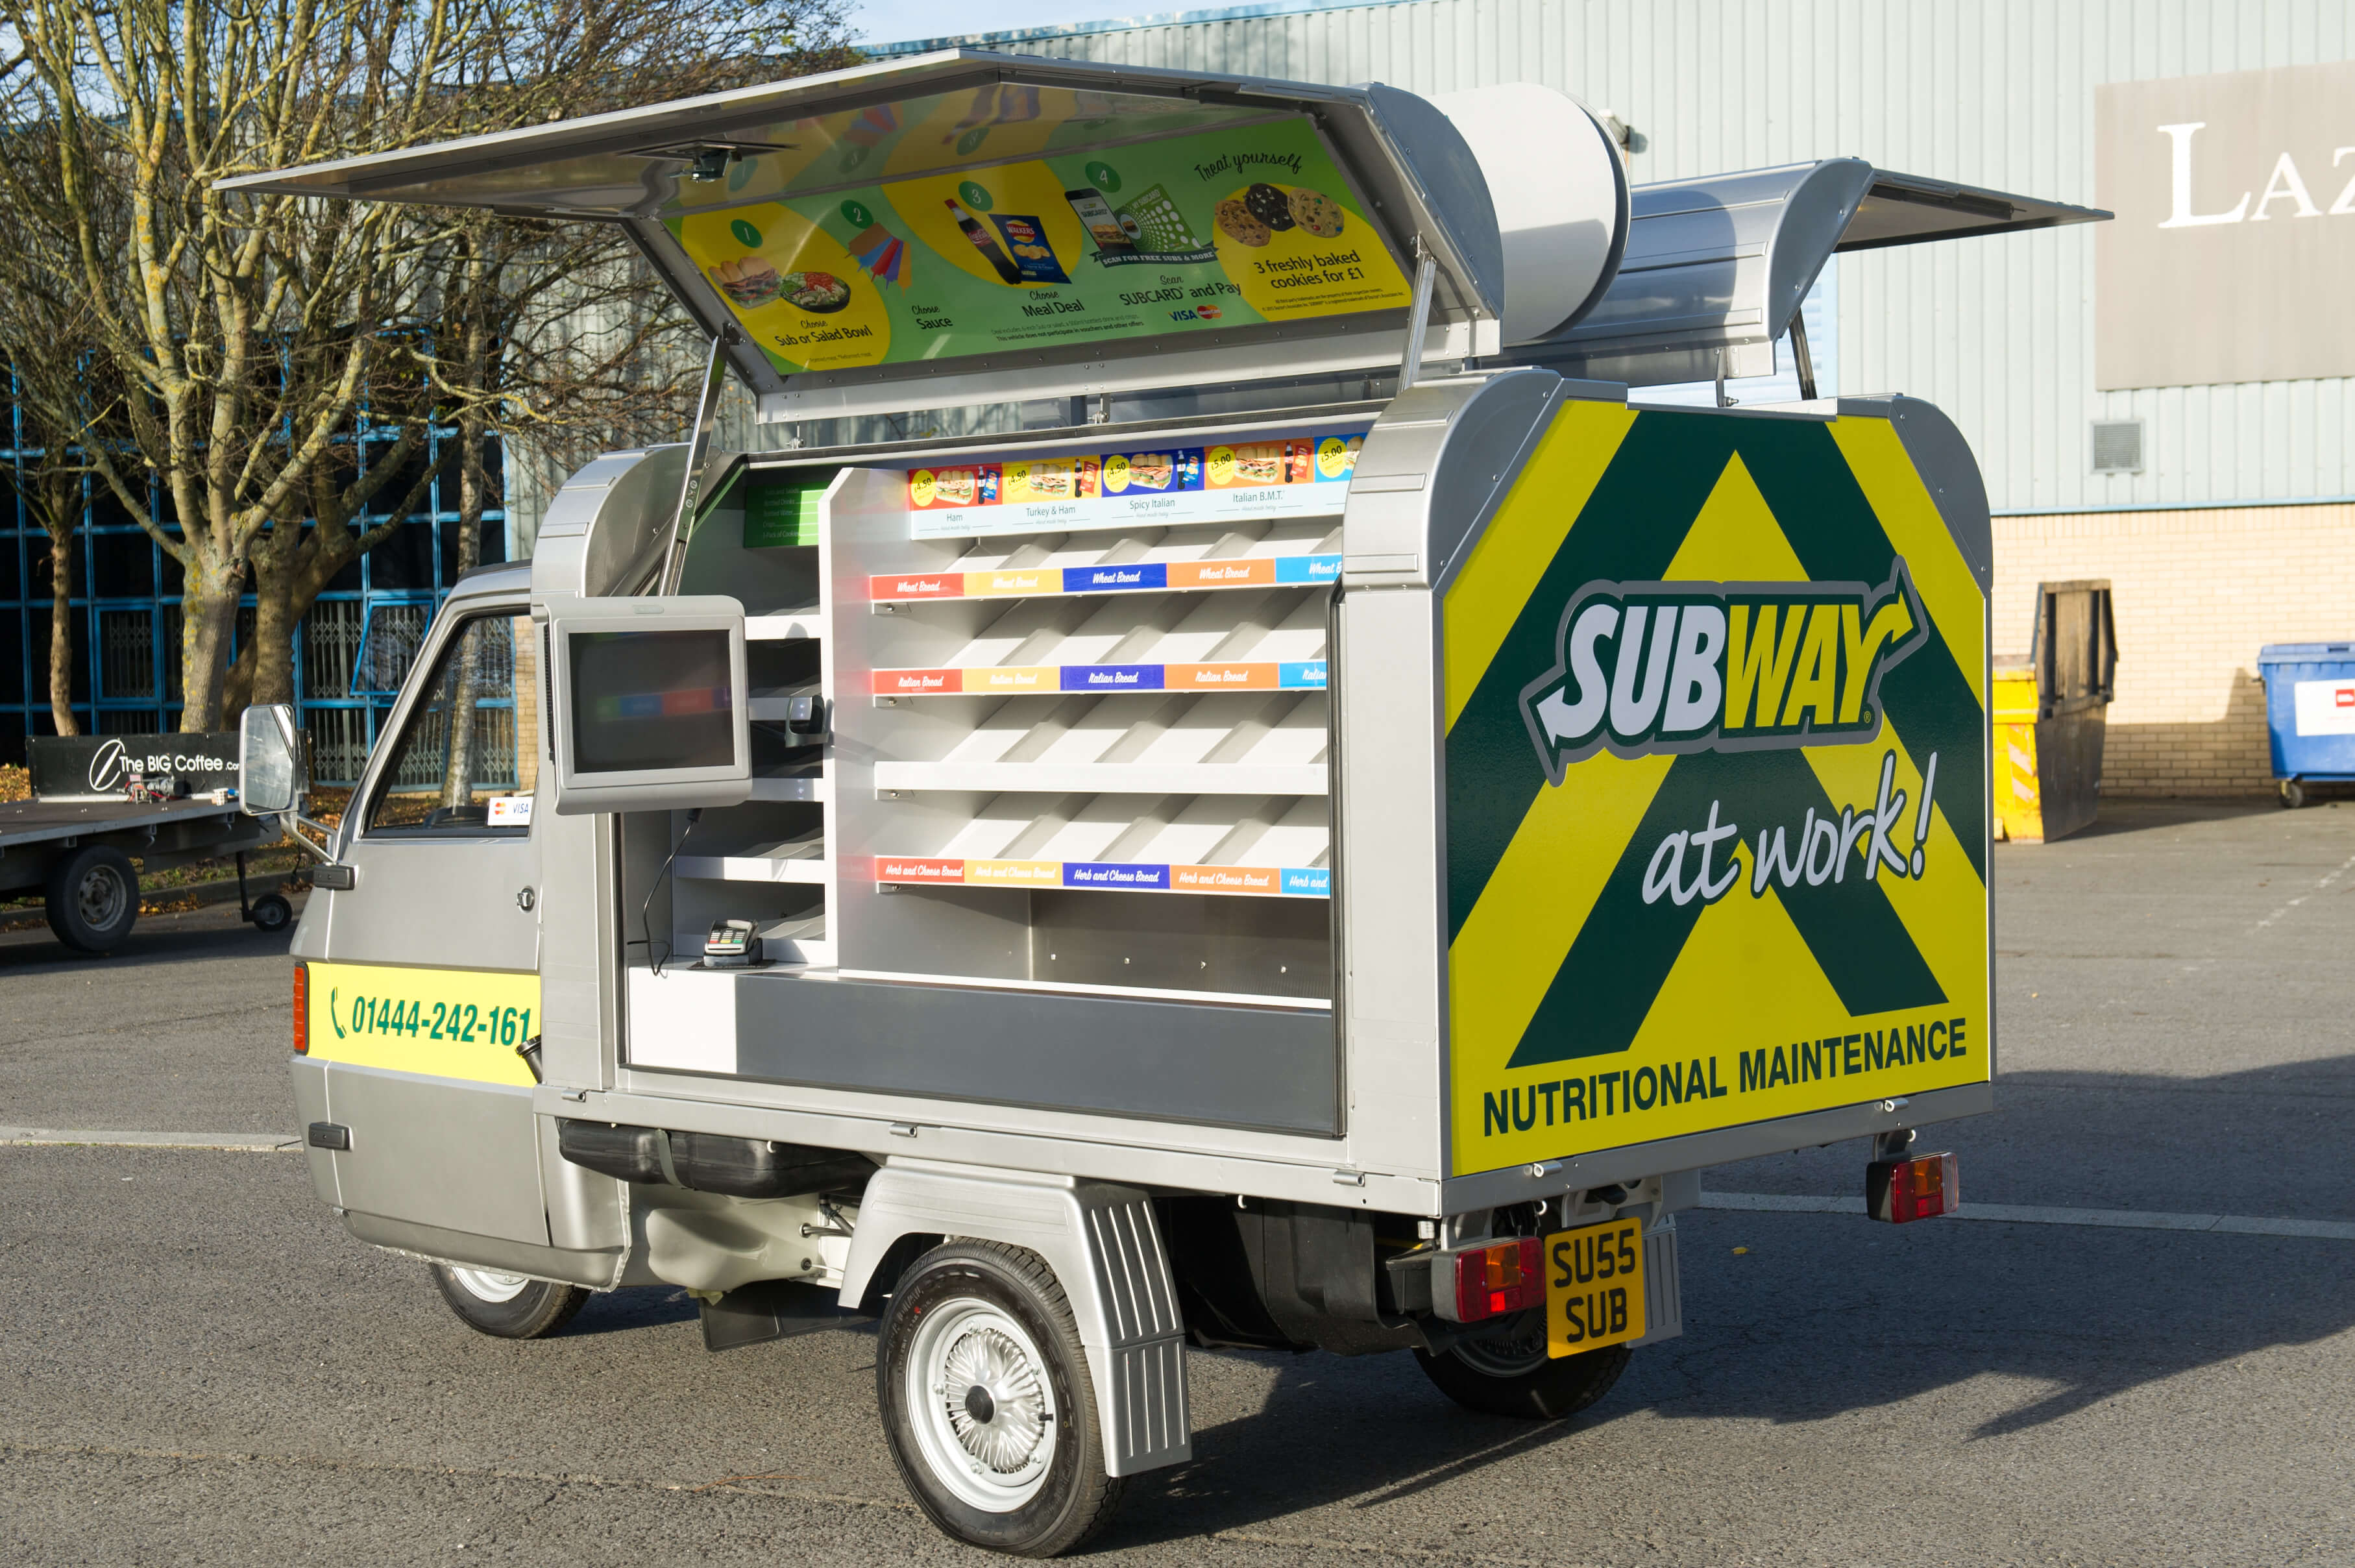 Subway Sandwich Marketing Vehicle